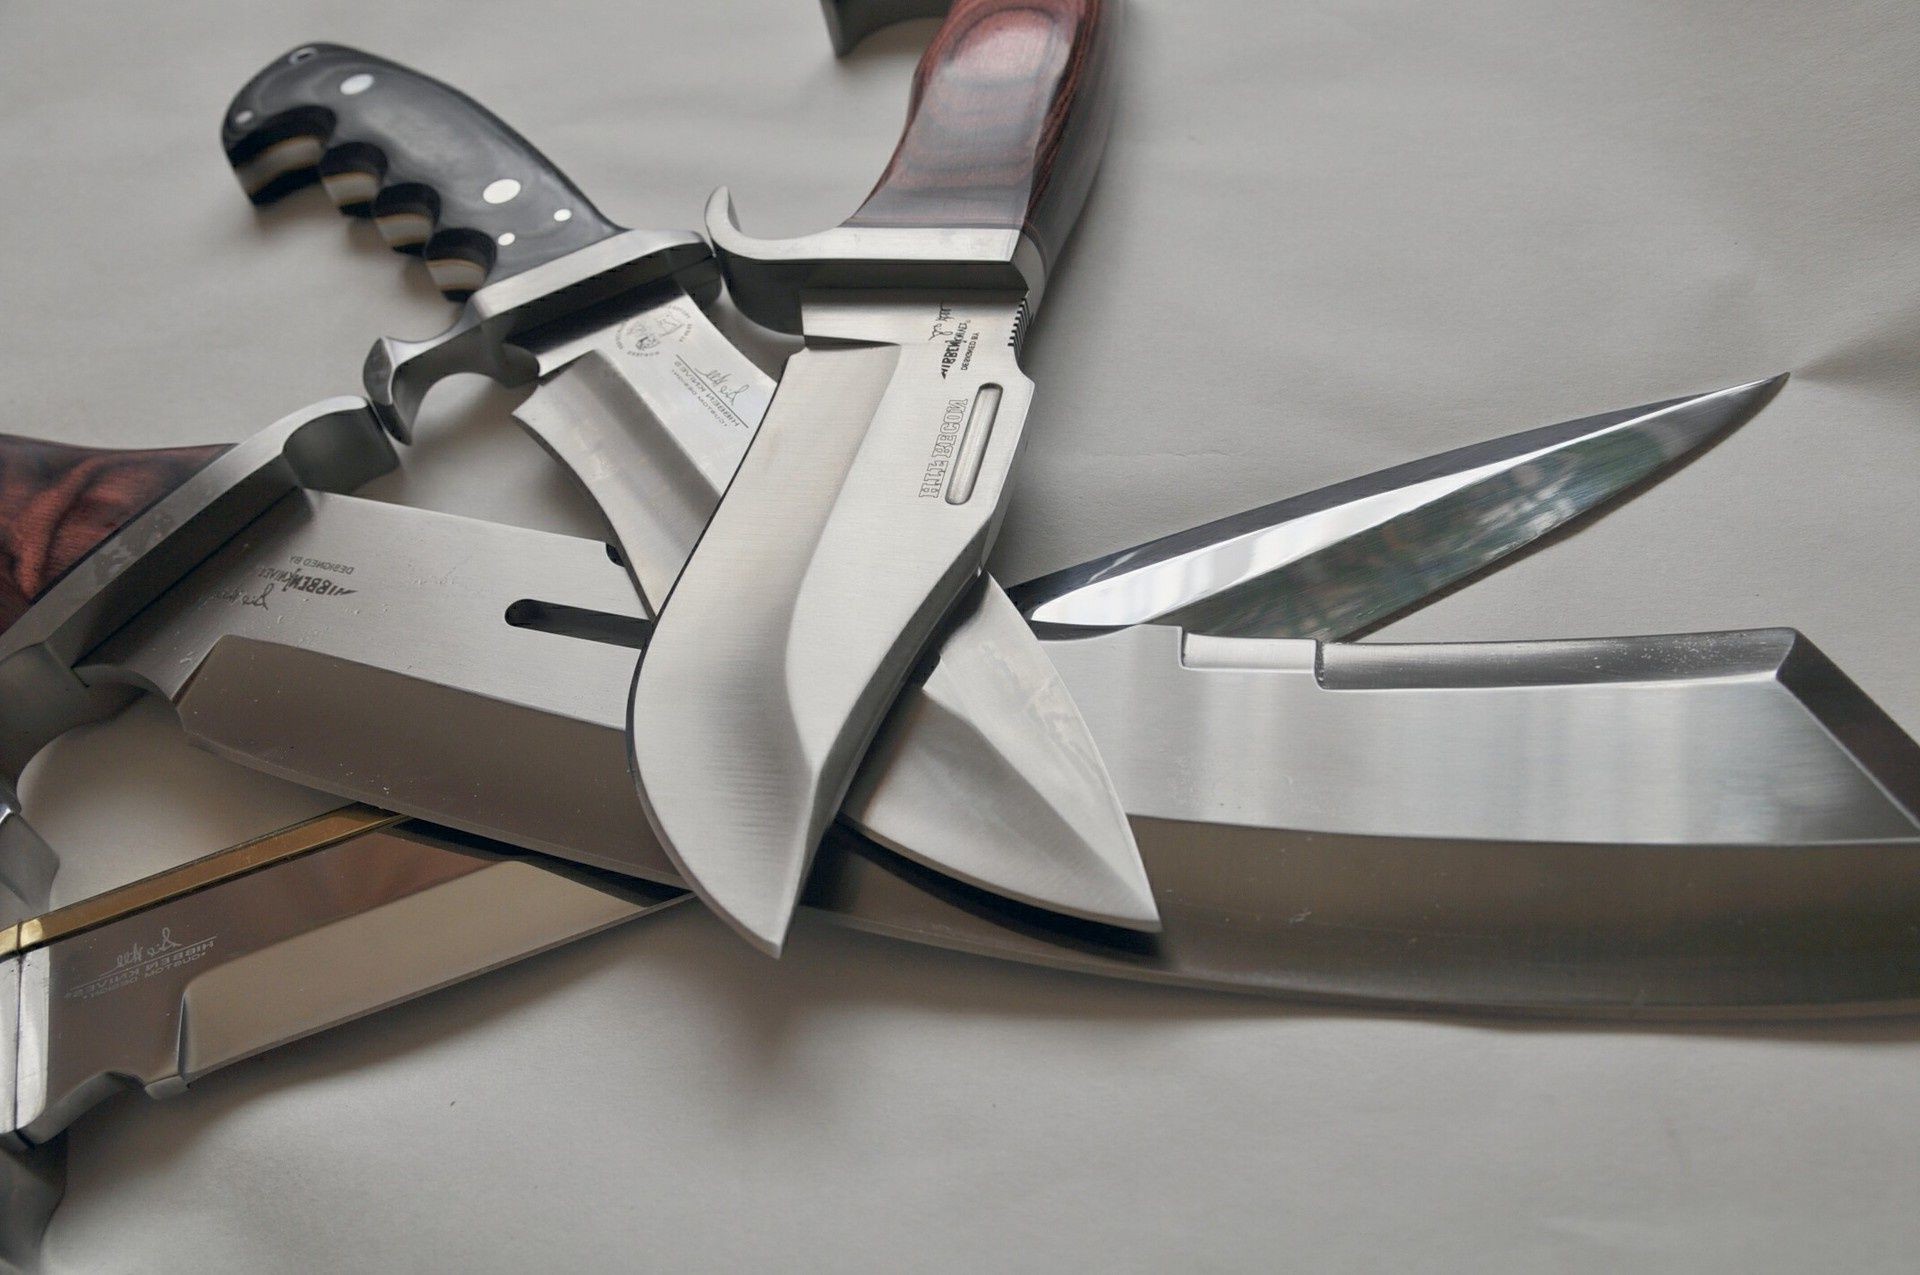 мечи и клинки нож сталь острый бизнес натюрморт остекленные хром